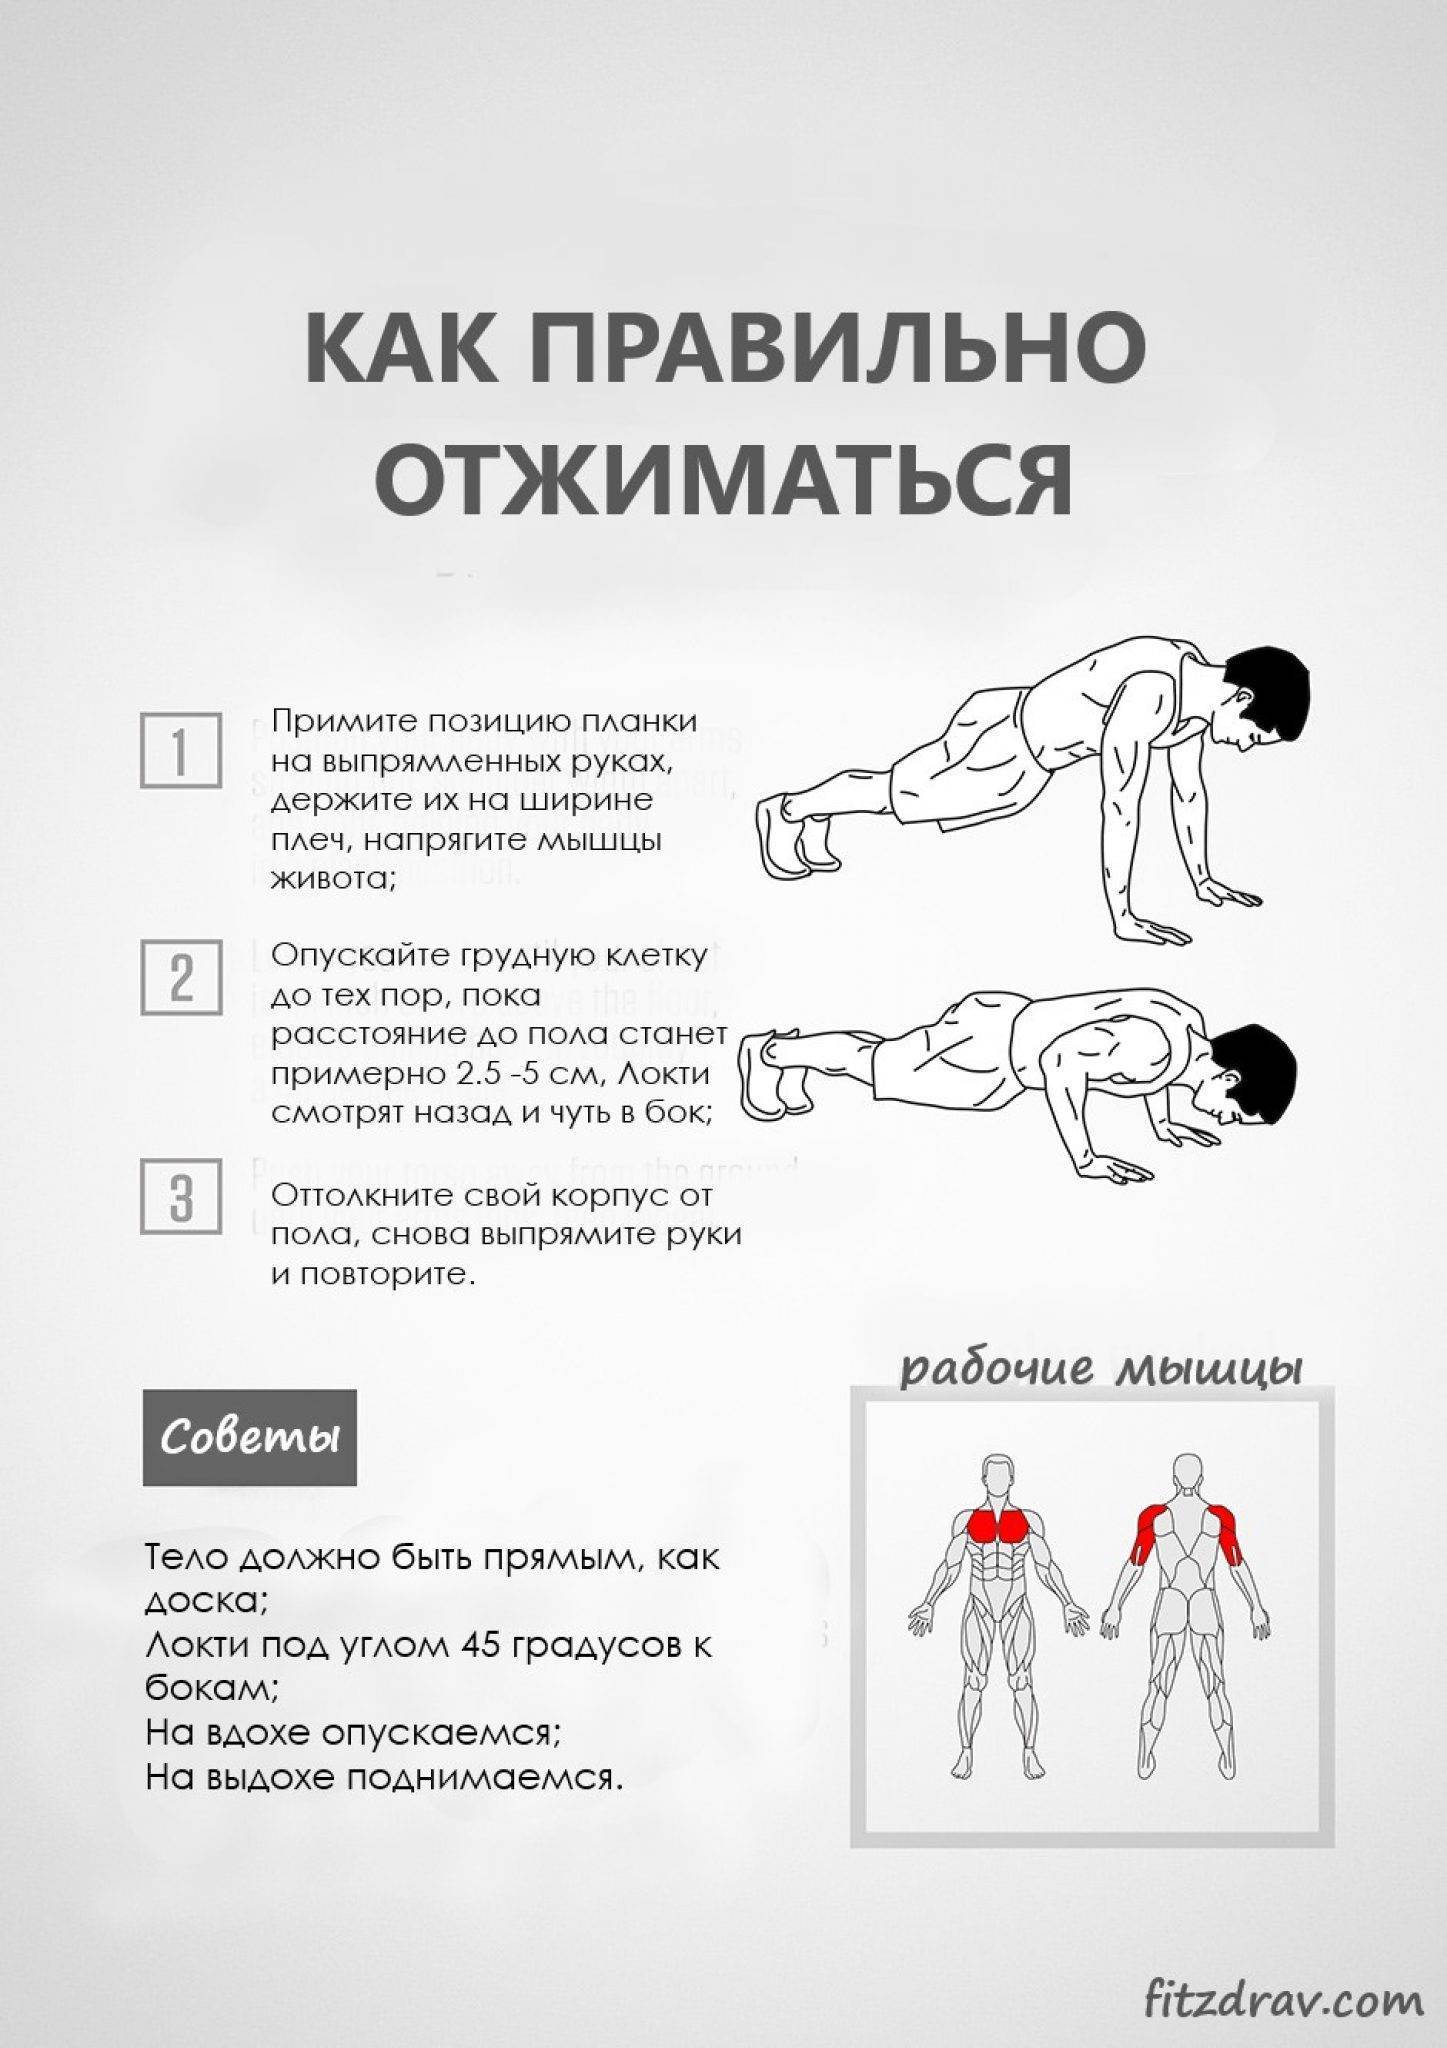 Отжимания в стойке на руках вверх ногами у стены: польза и вред, техника — life-sup.ru